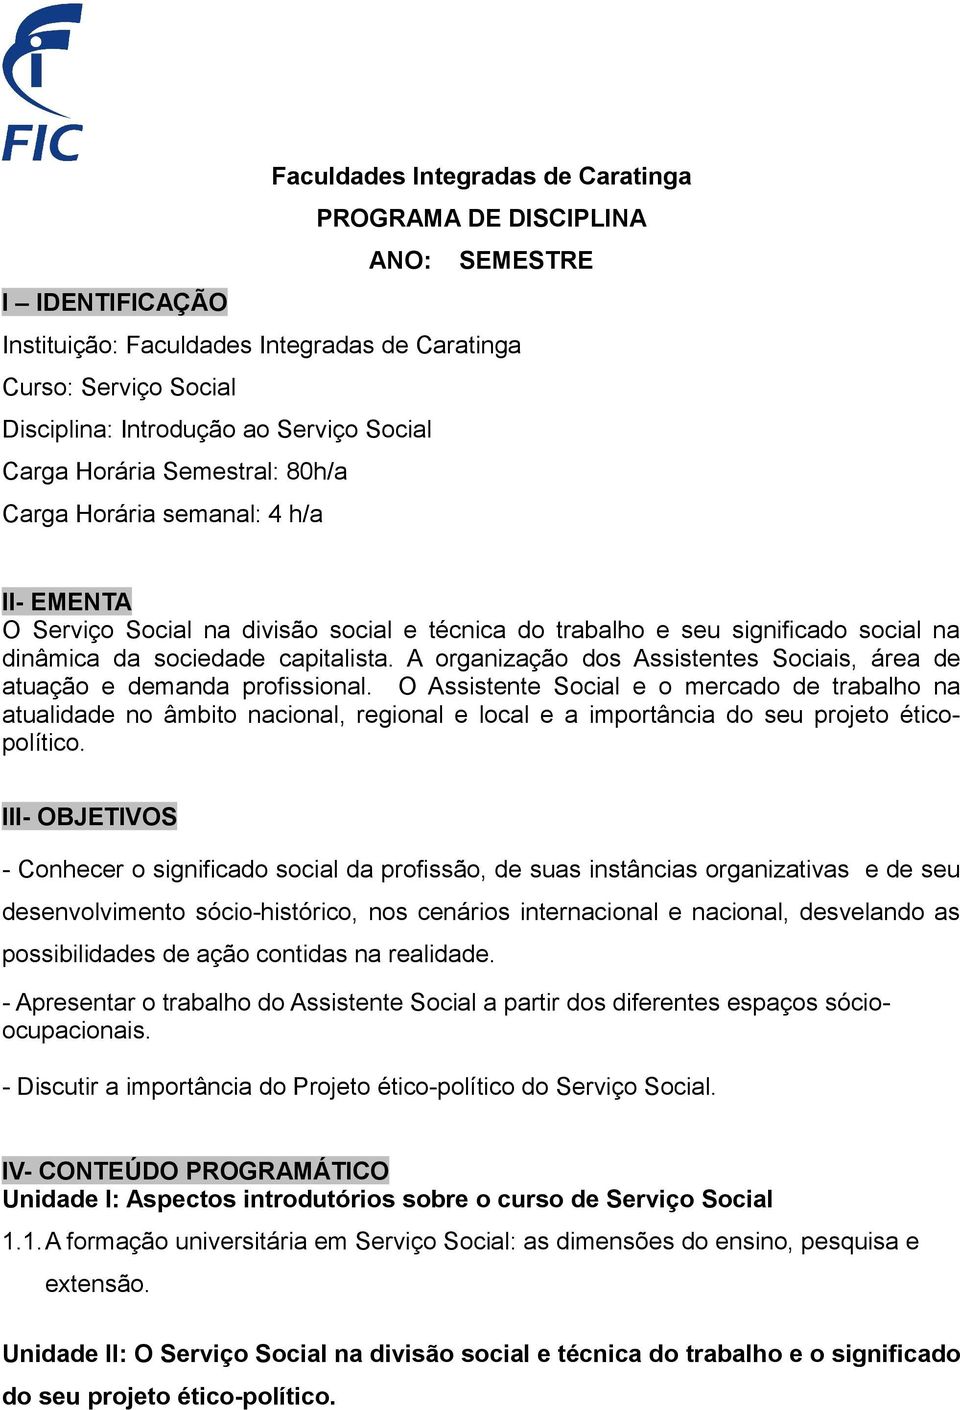 A organização dos Assistentes Sociais, área de atuação e demanda profissional.